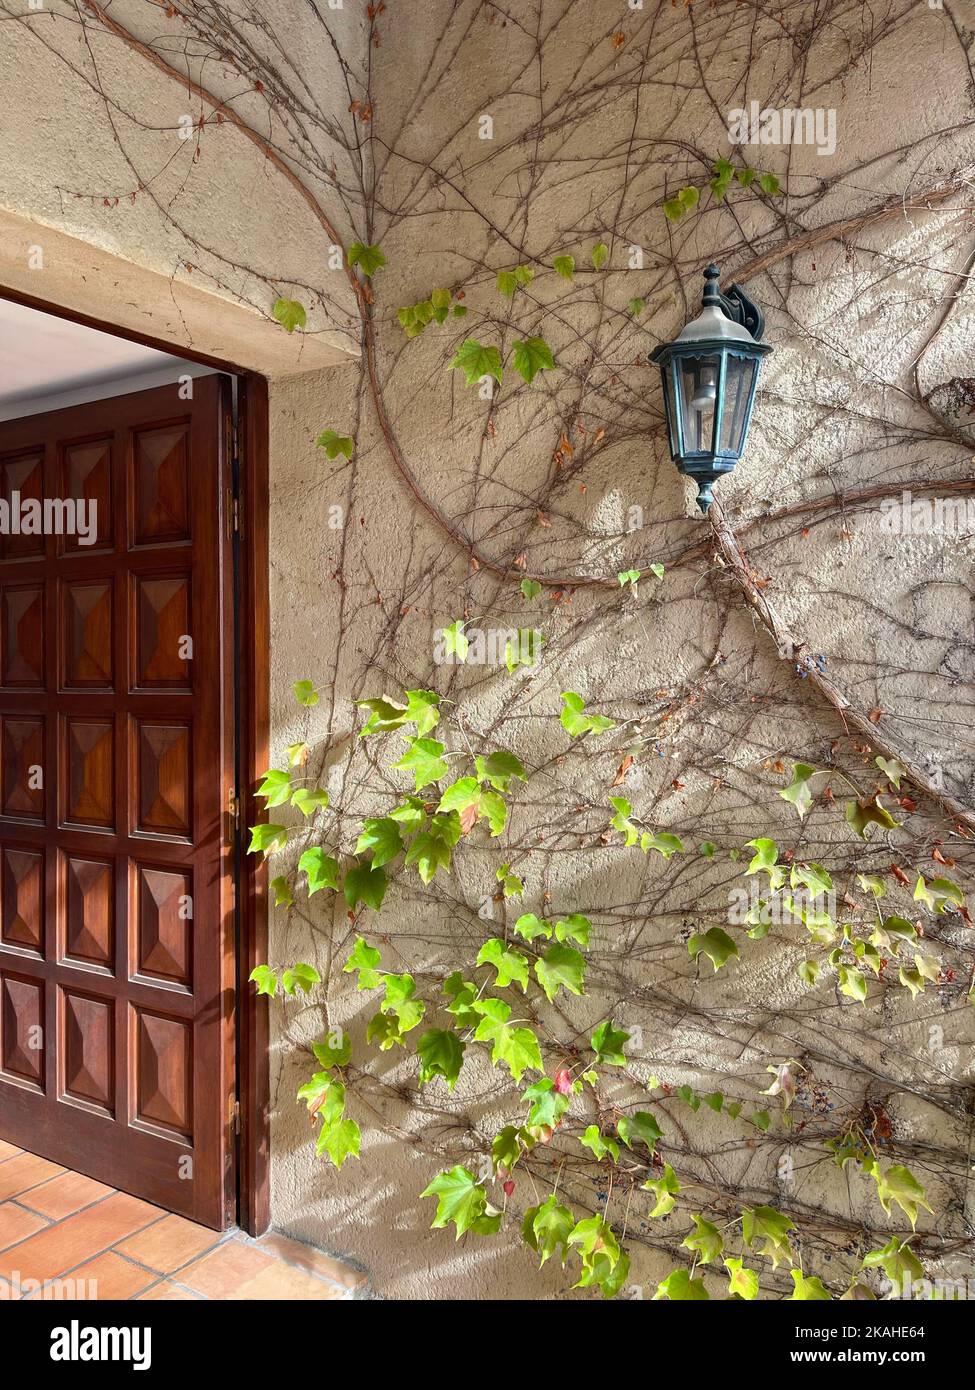 Nahaufnahme einer Lampe und einer Weinrebe, die an einer Wand an einer offenen Haustür wachsen, Maussane-les-Alpilles, Bouches-du-Rhone, Provence-Alpes-Cote-d'Azur, Frankreich Stockfoto